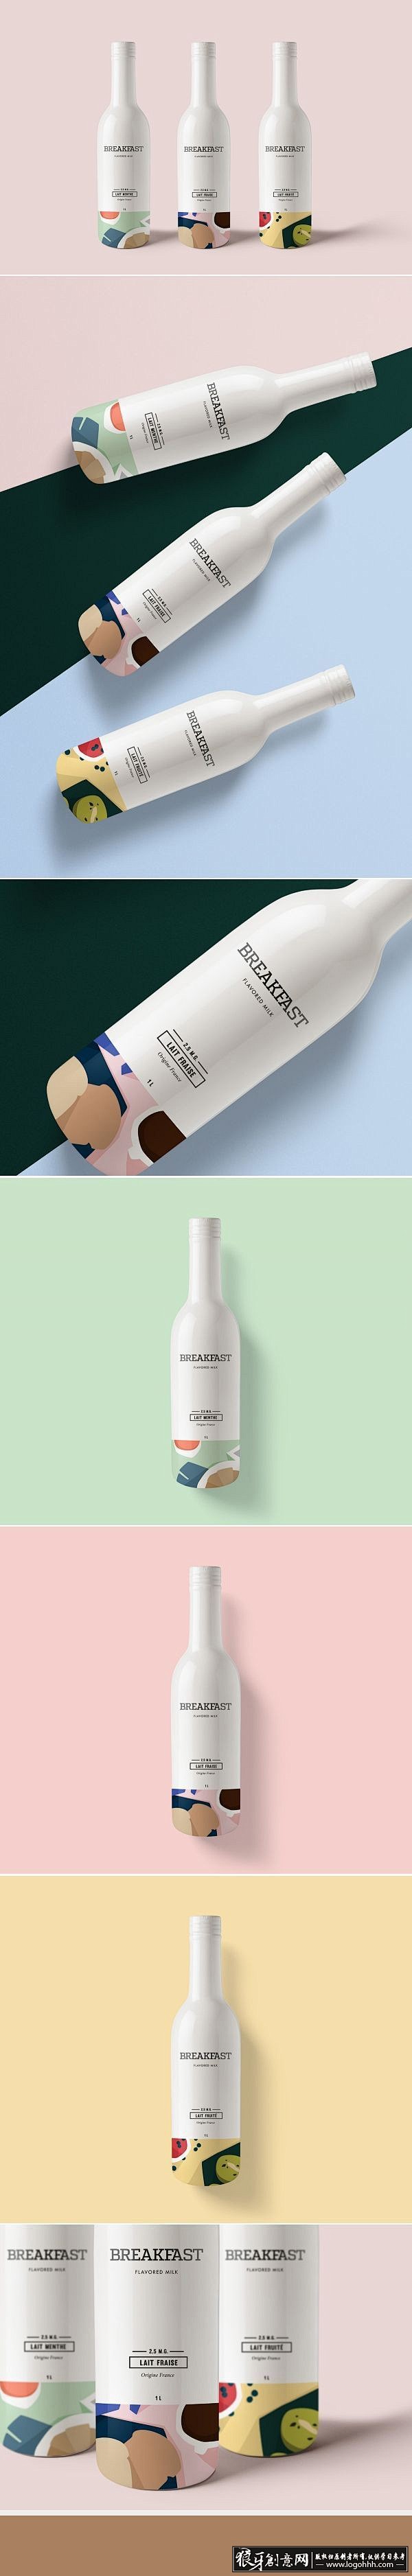 包装设计灵感 精美瓶子包装设计欣赏 白色...